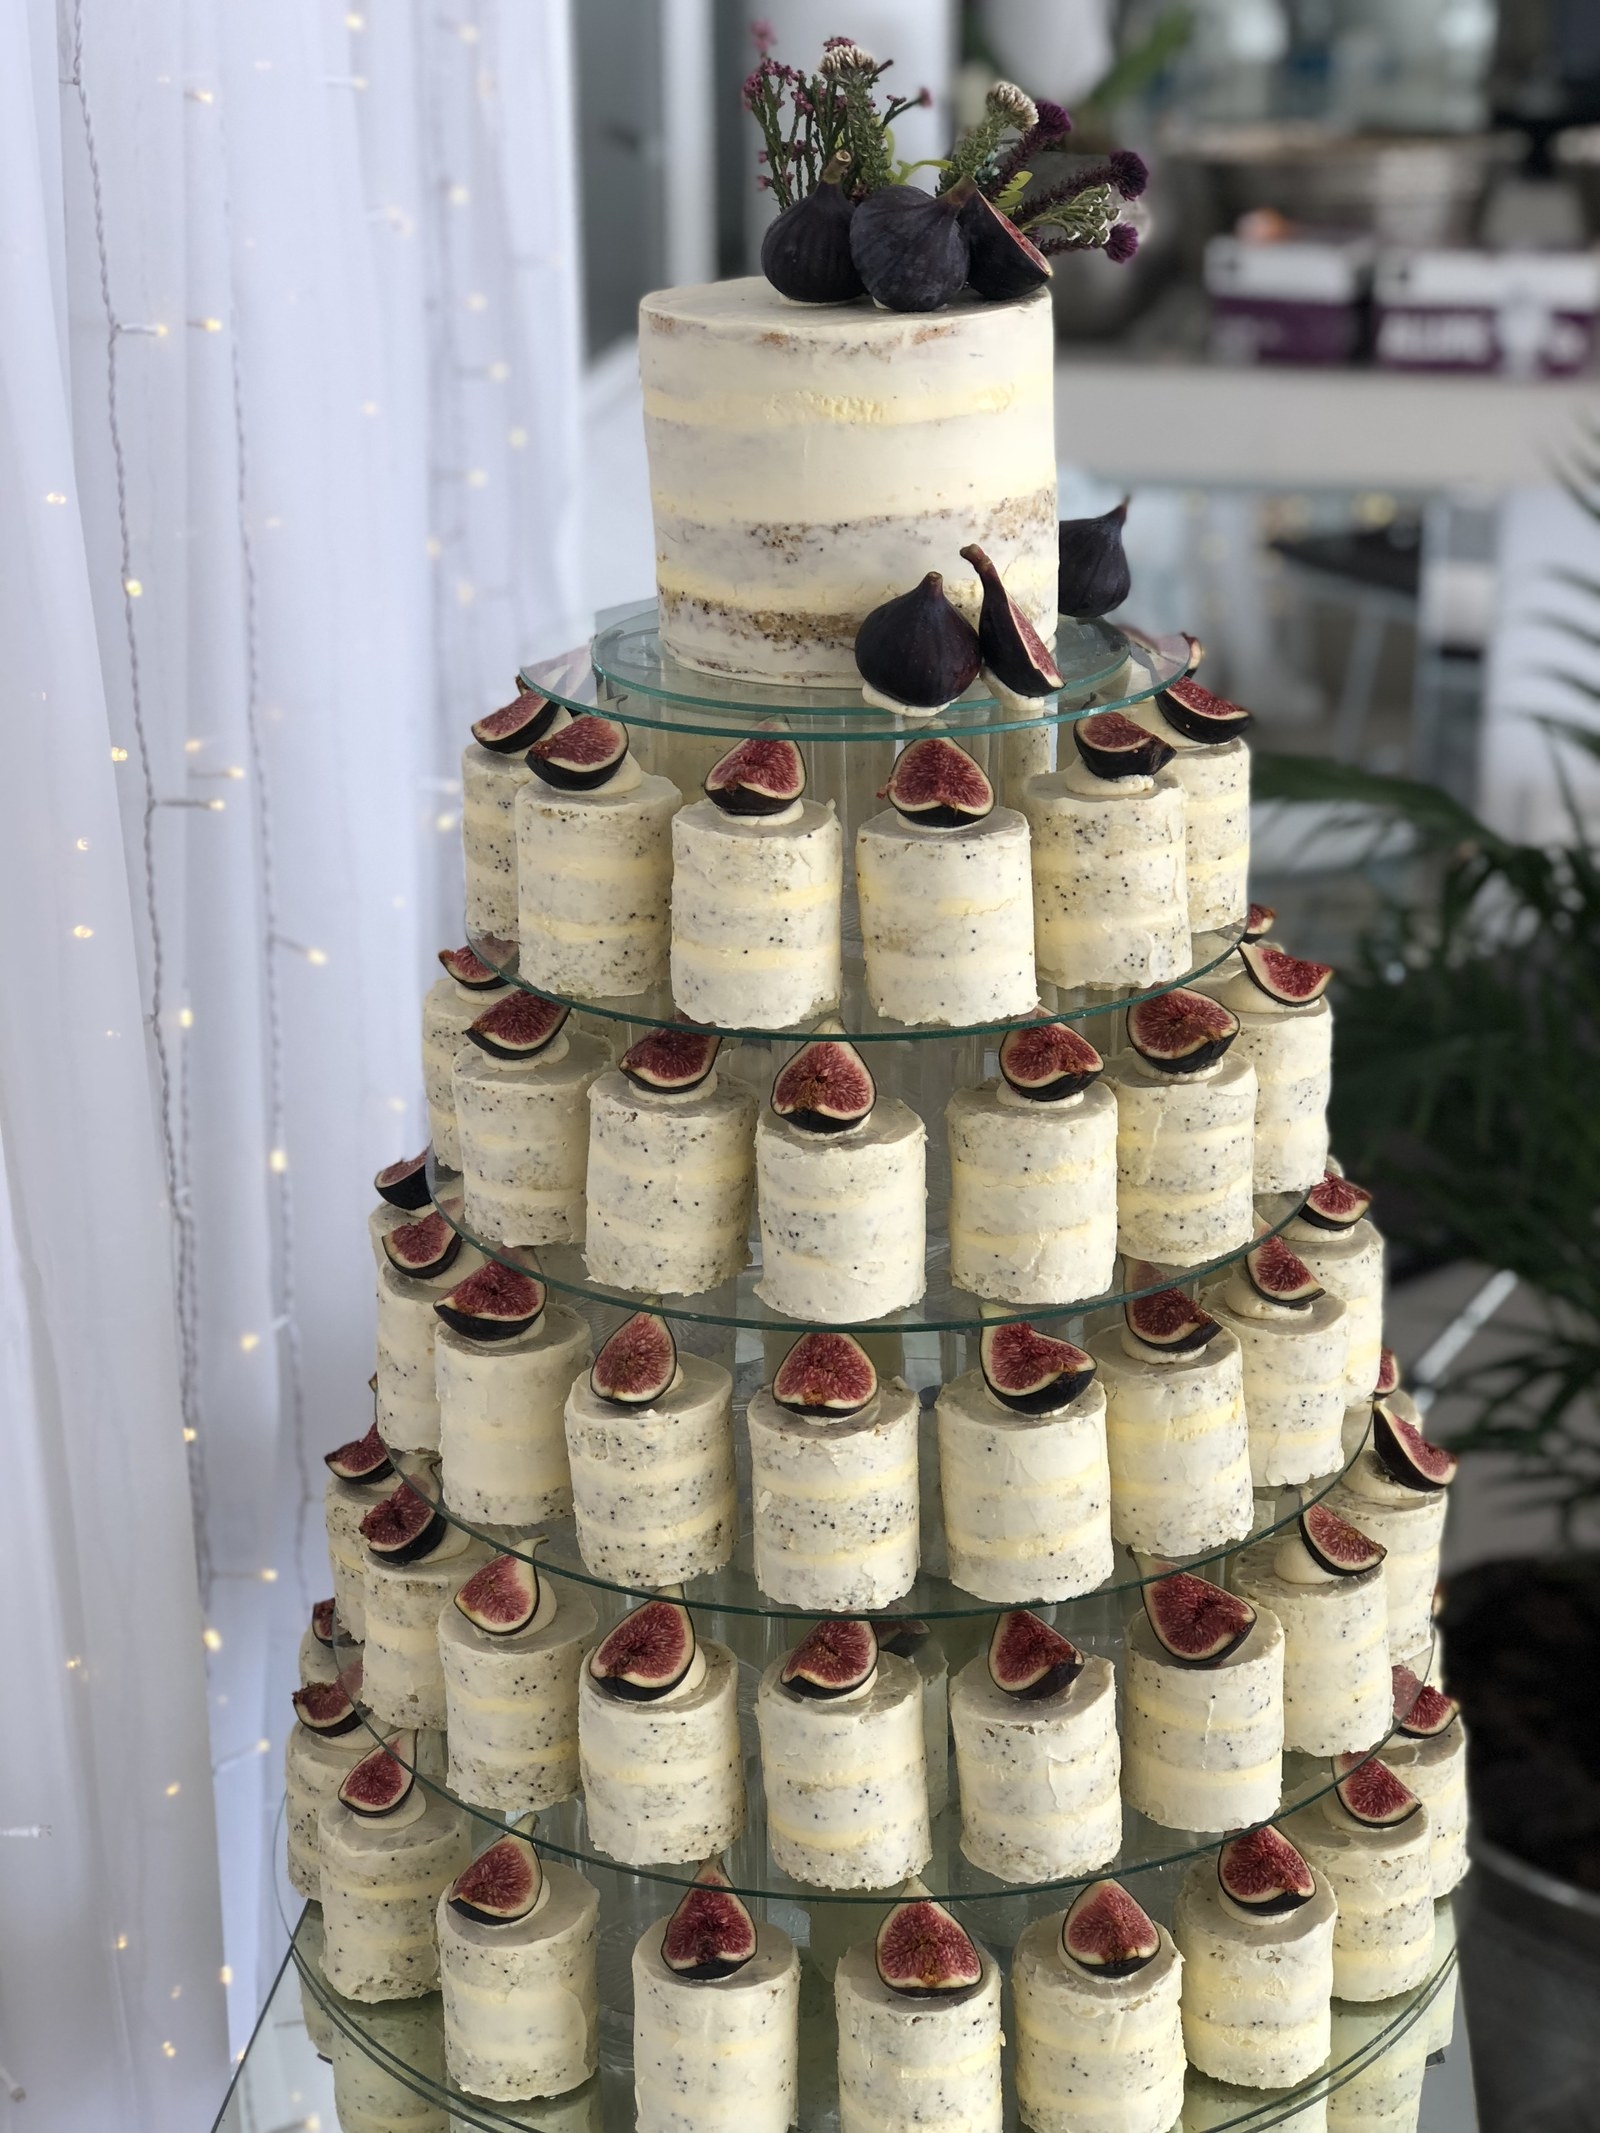 Unusual wedding cake - Decorated Cake by Maira Liboa - CakesDecor